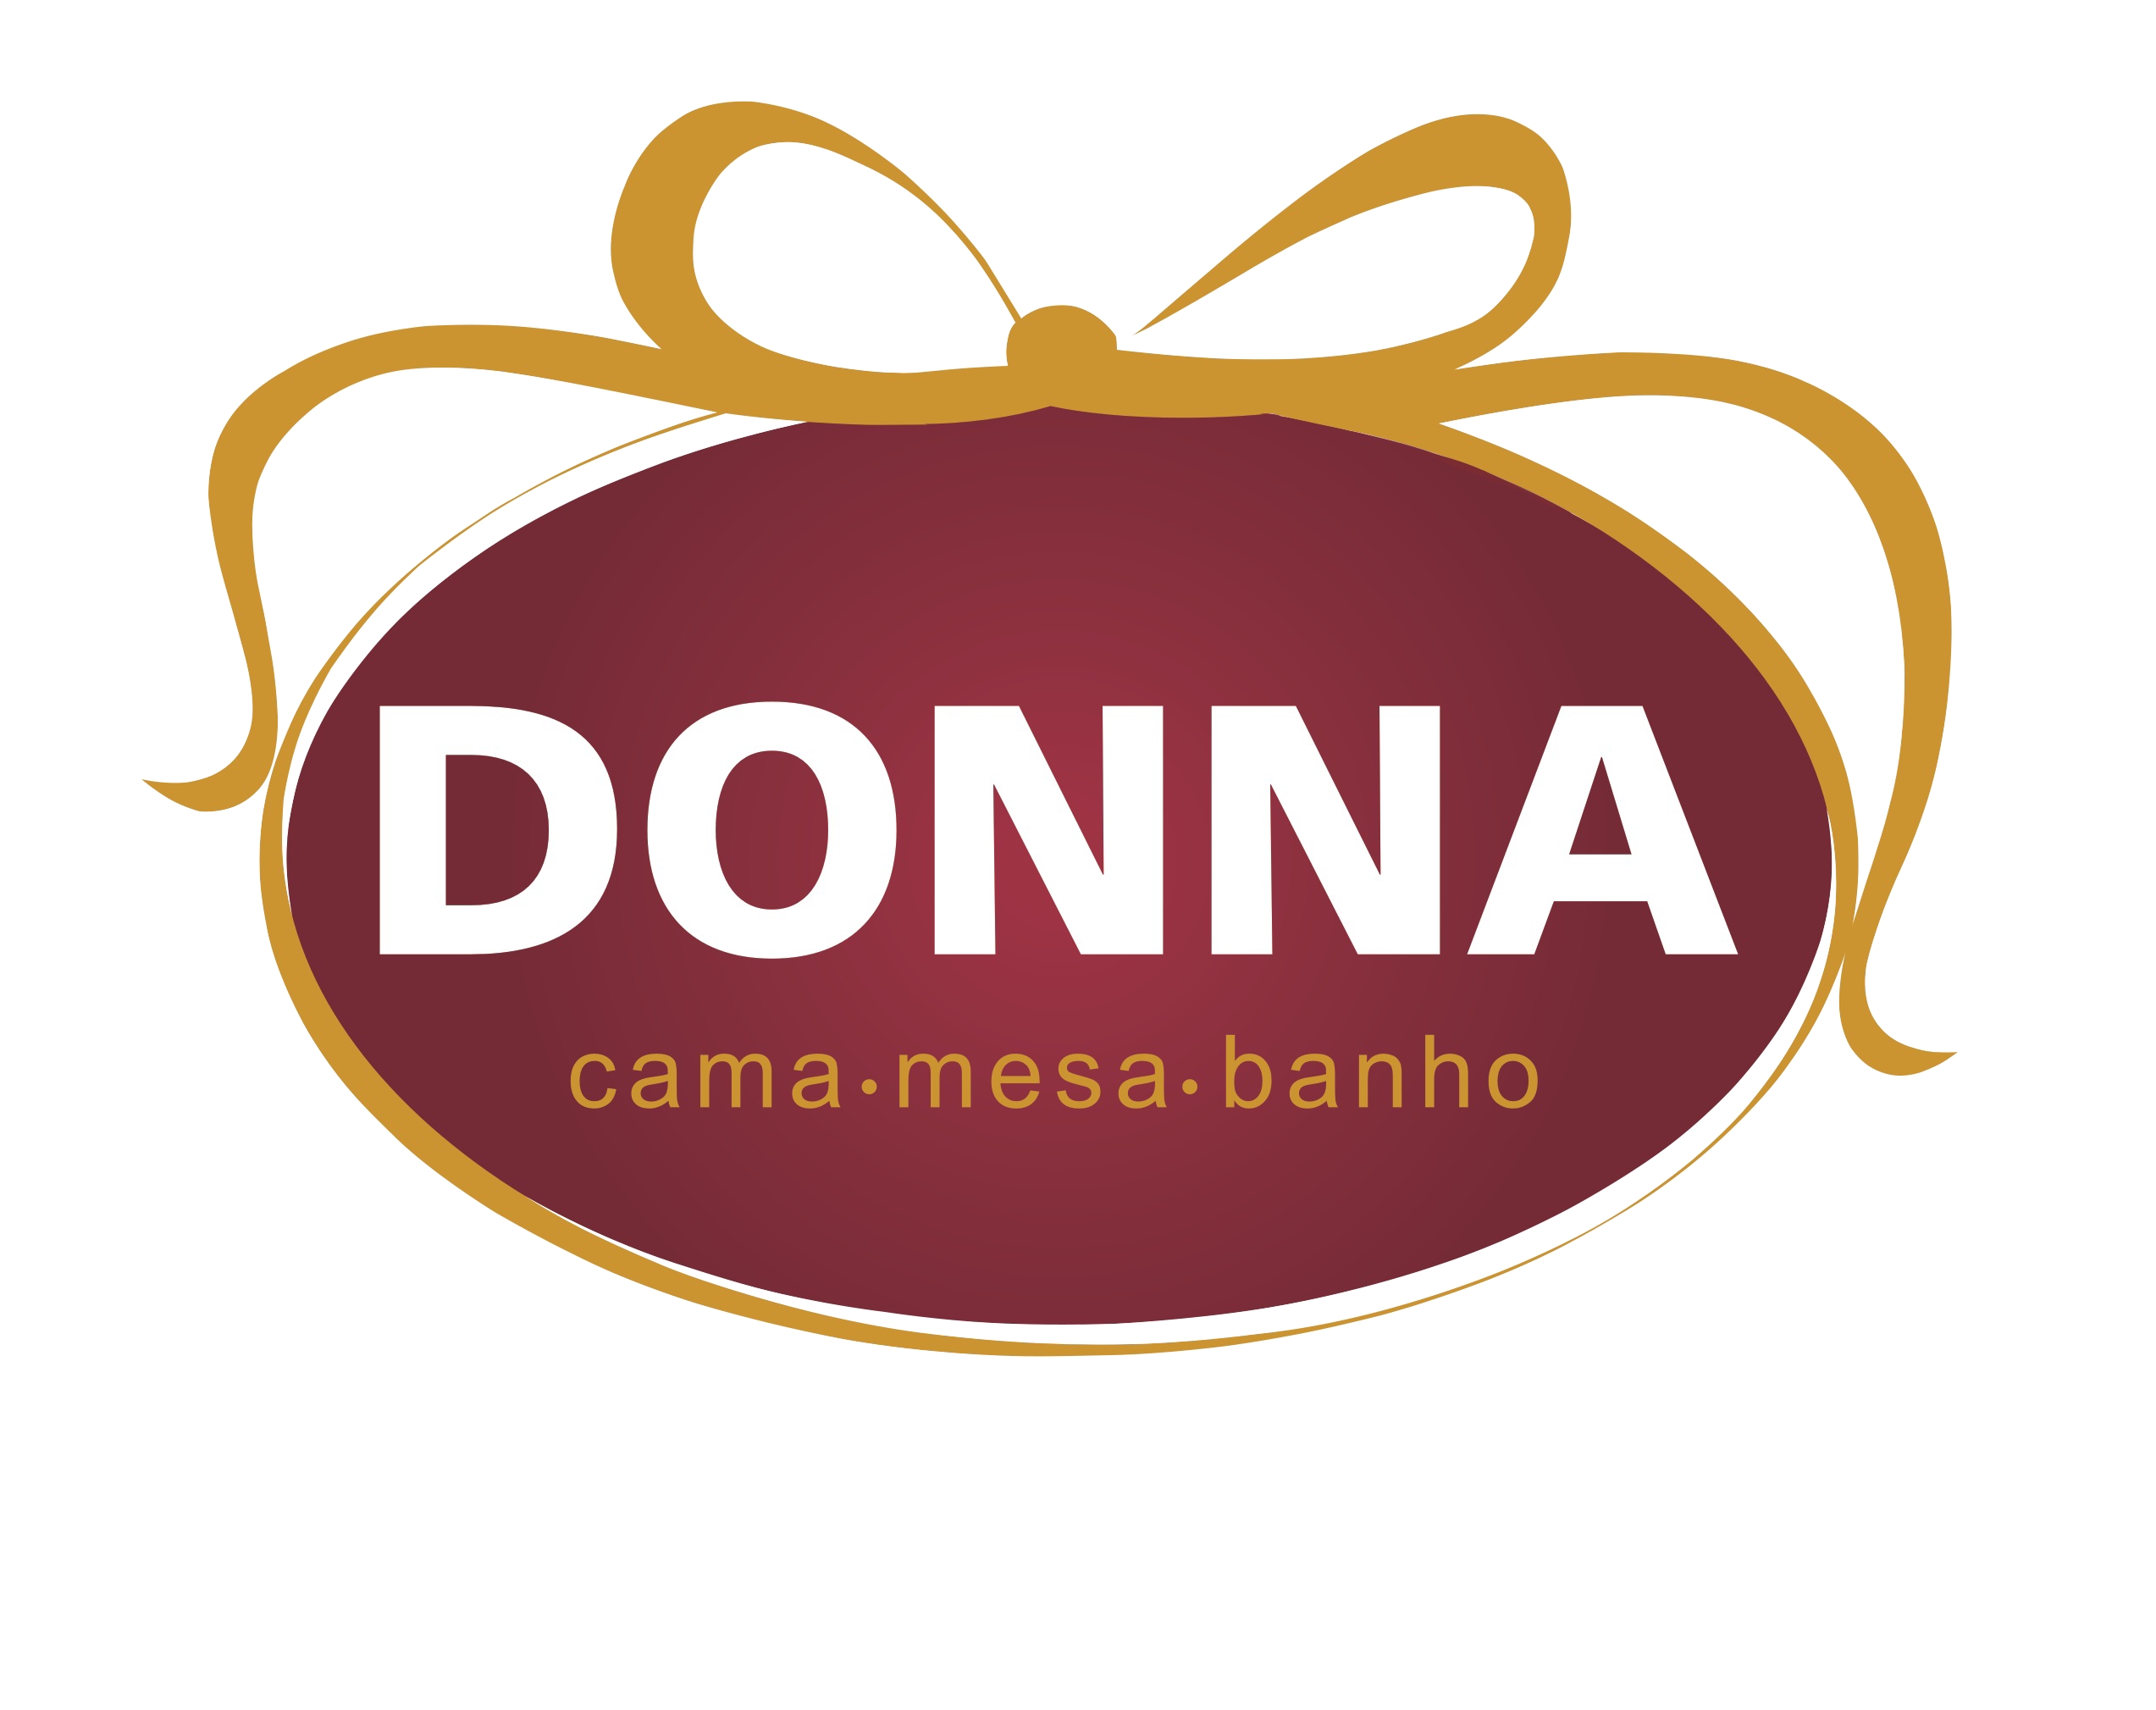 Lojas Donna: visão e valores de mercado